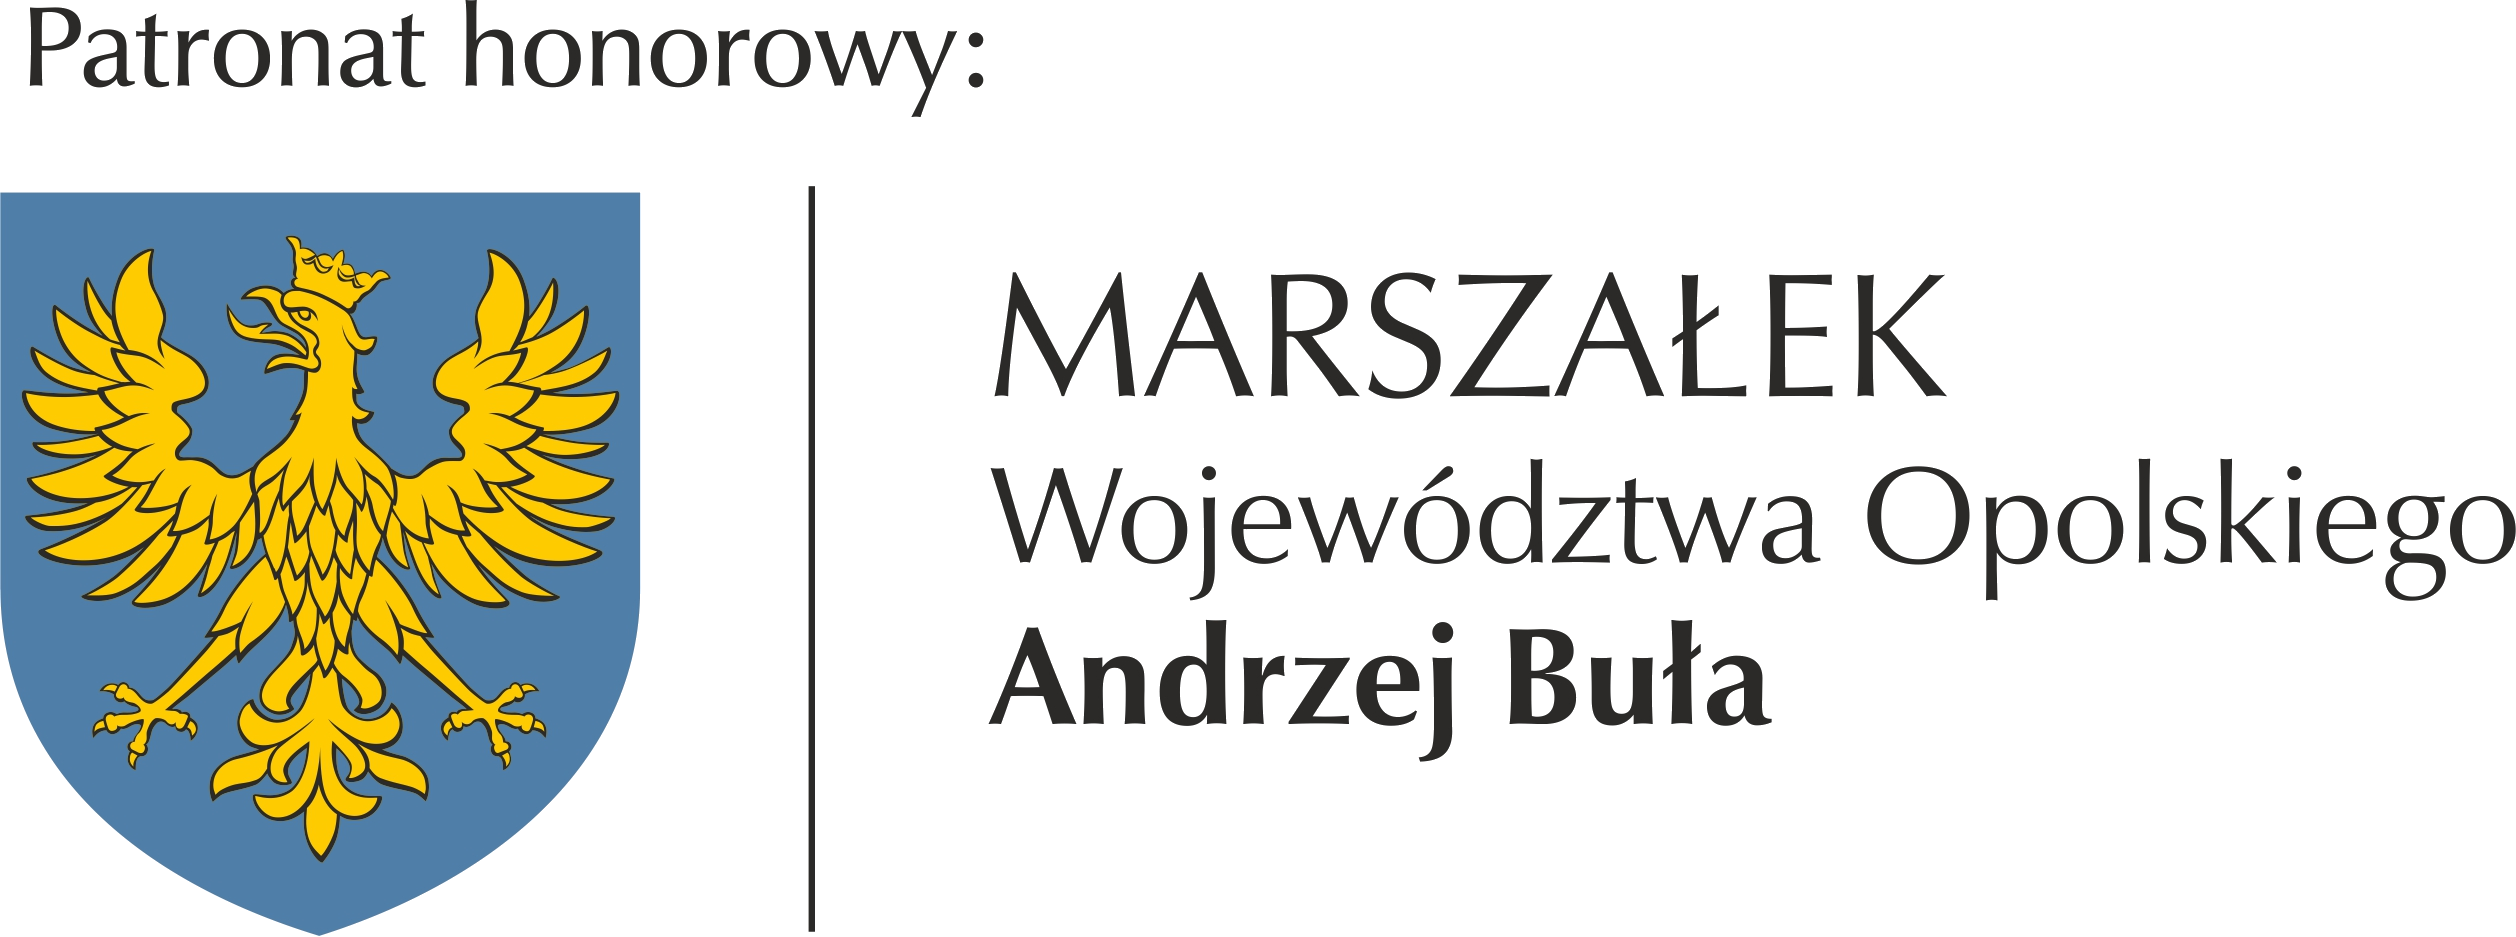 Logo patronat marszalek opolski